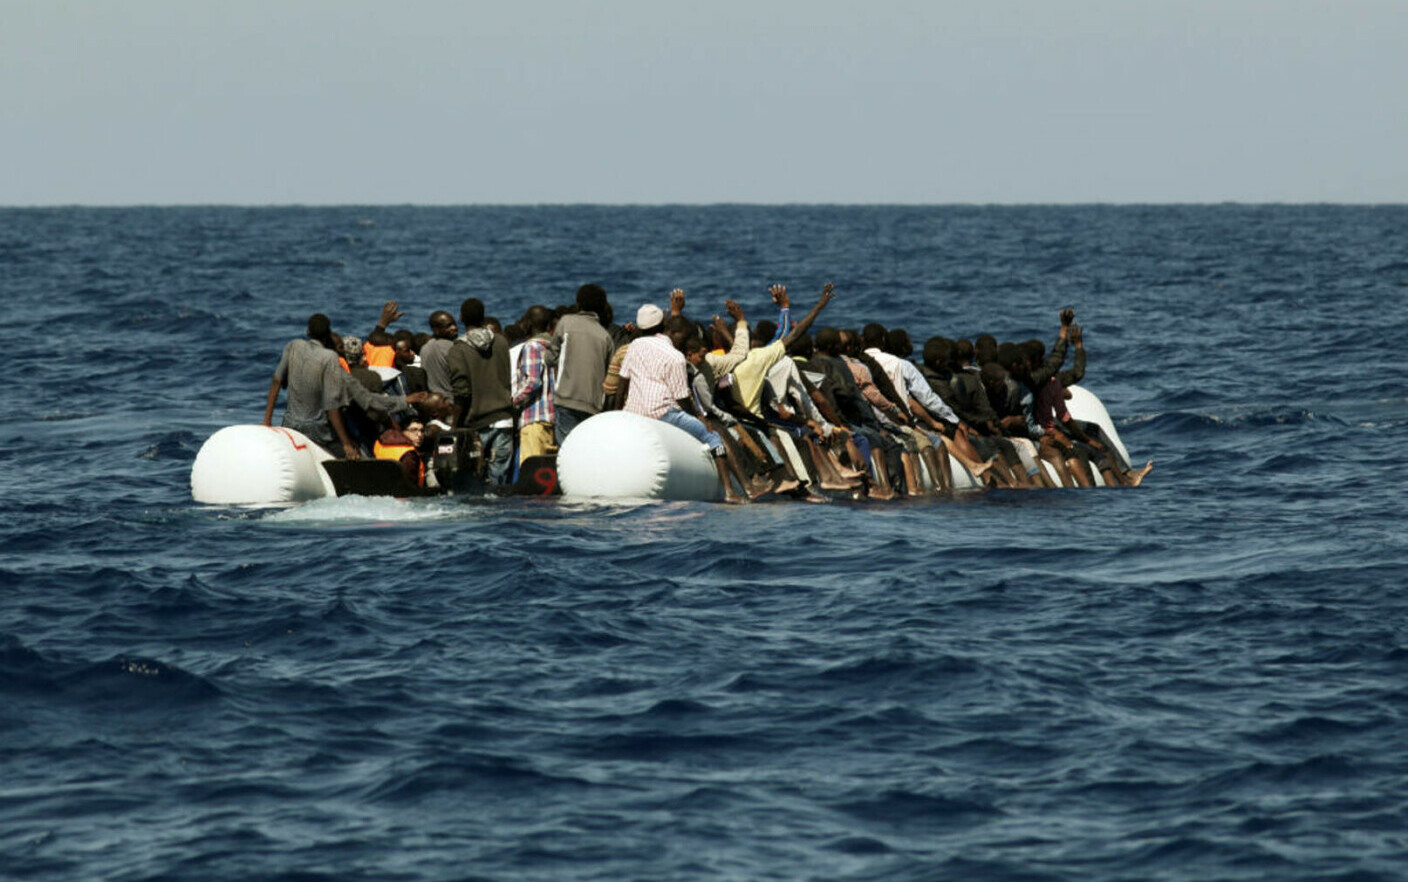 Affondamento di una nave che trasportava migranti al largo delle coste greche.  Fino a 50 persone scomparse